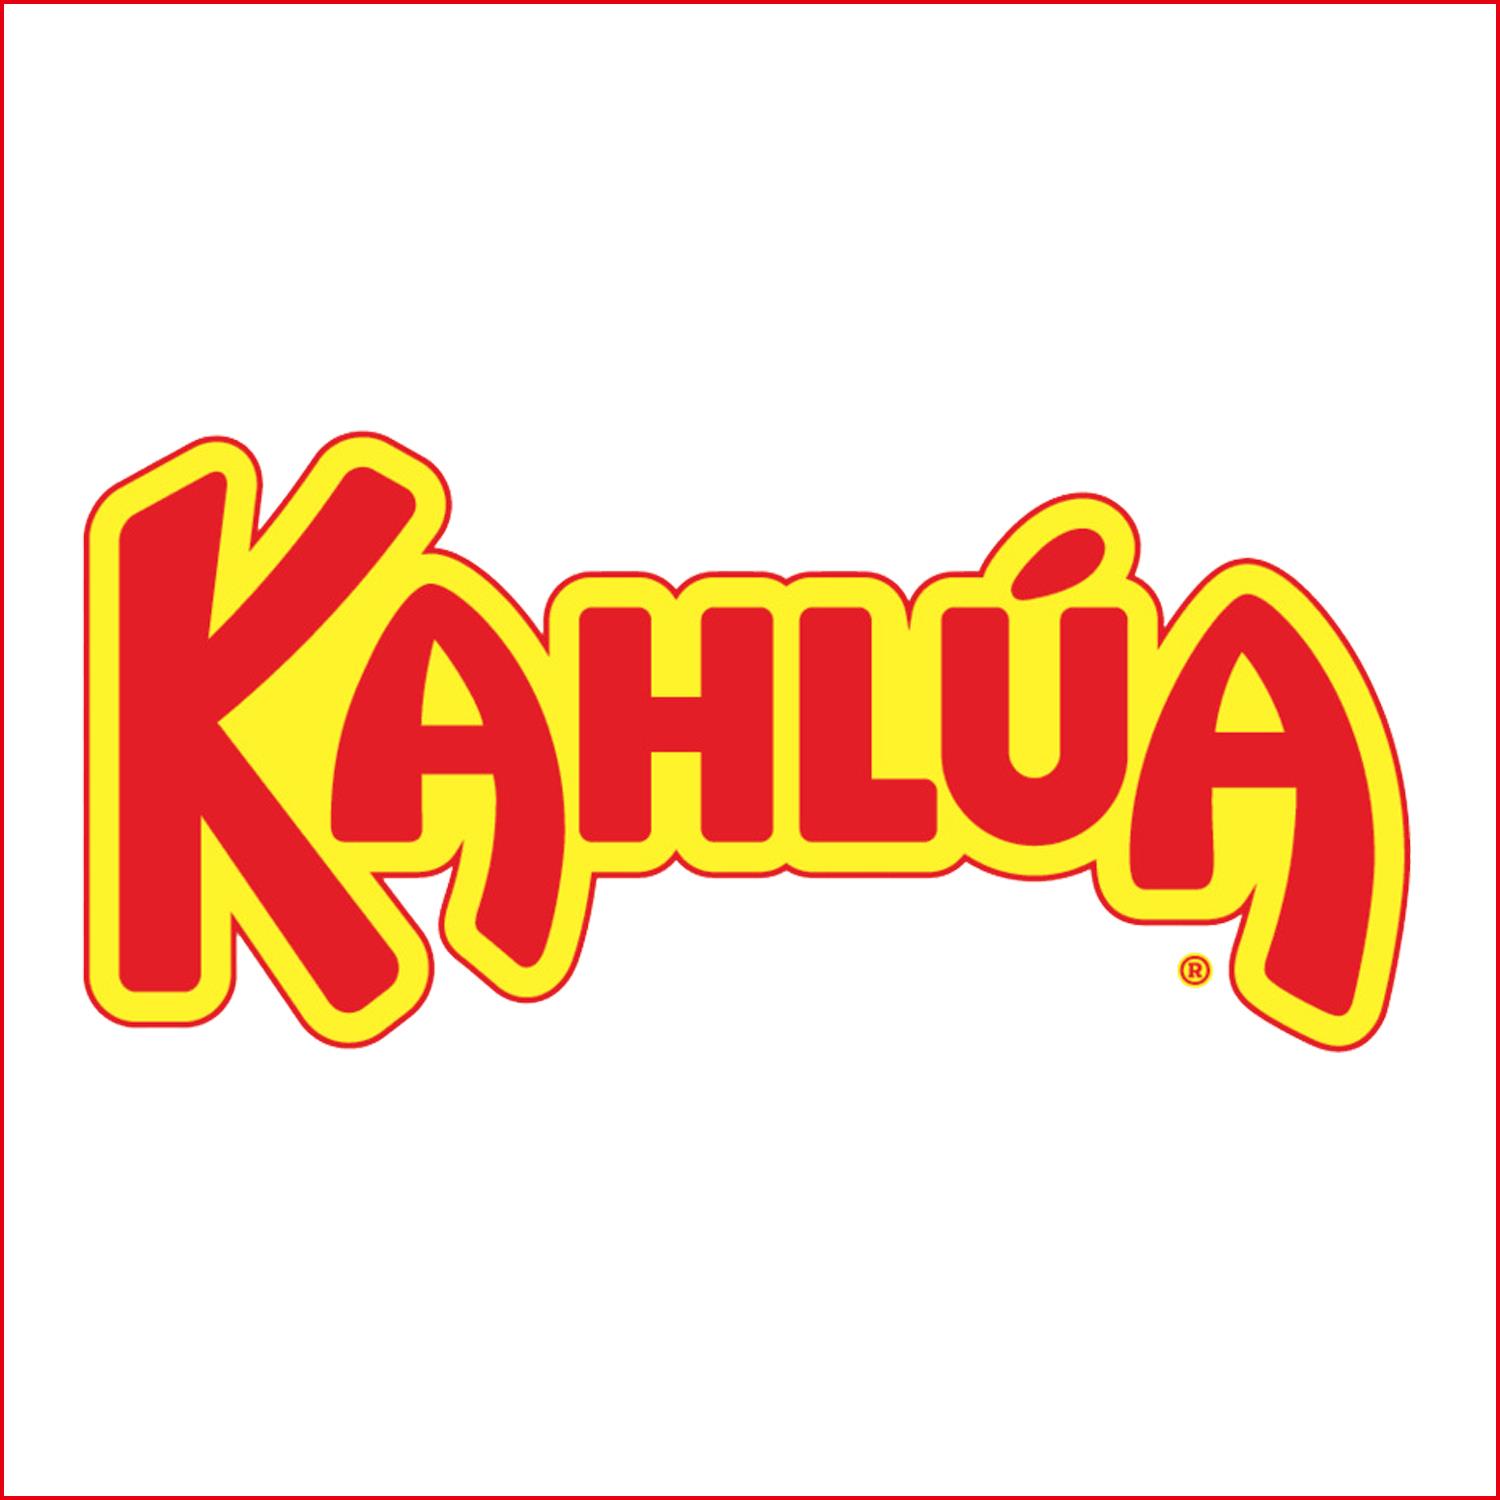 卡魯哇 Kahlua